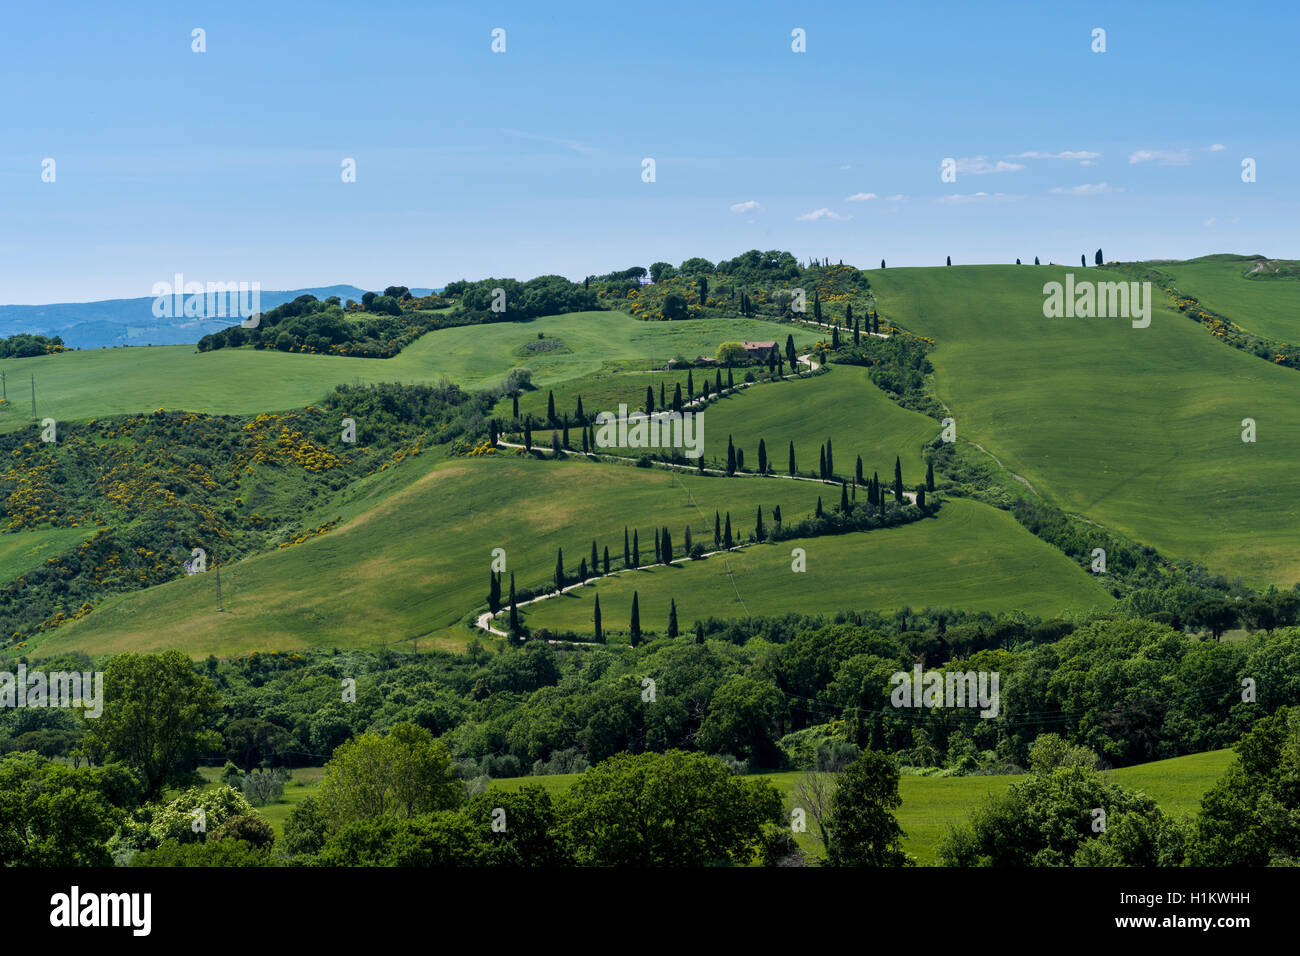 Paysage typique toscan vert dans le Val d'Orcia, avec des collines, arbres, champs, cyprès et farm road, La Foce, Toscane, Italie Banque D'Images